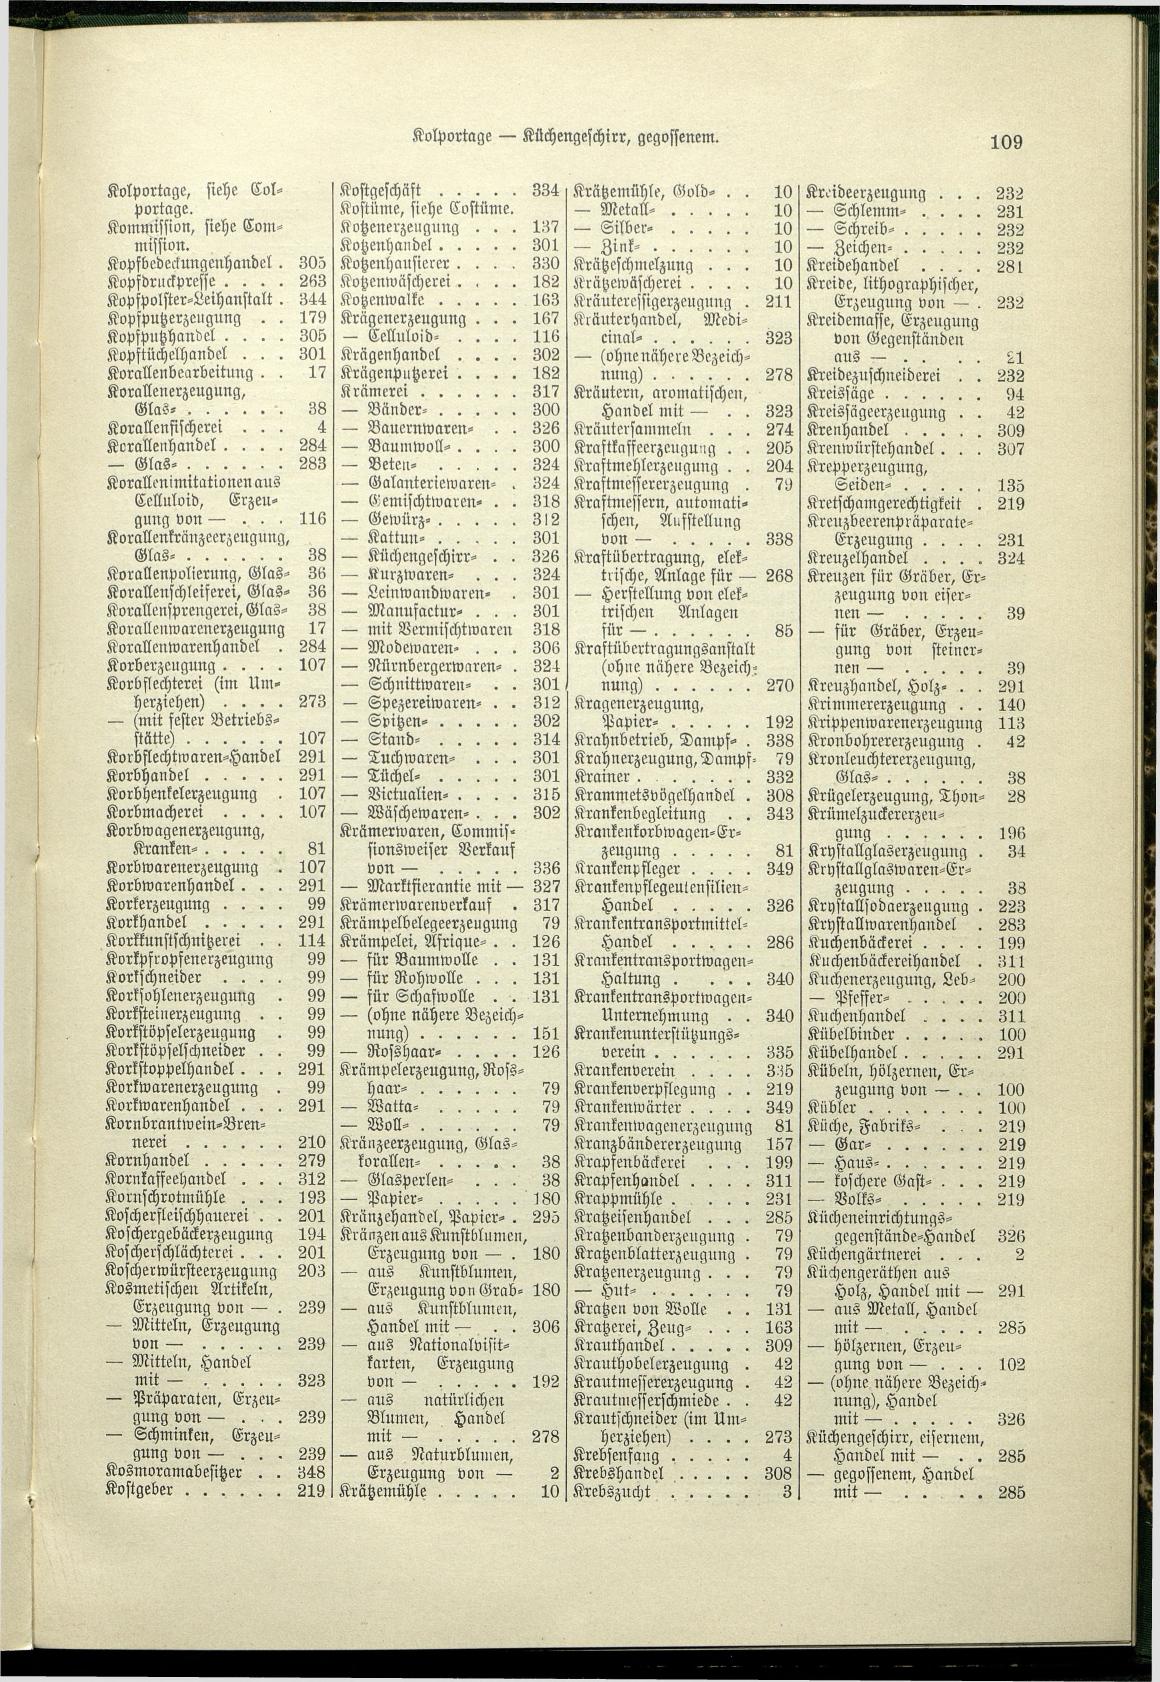 Verzeichnis der Gewerbe der im Reichsrathe vertretenen Königreiche und Länder 1900 - Page 113